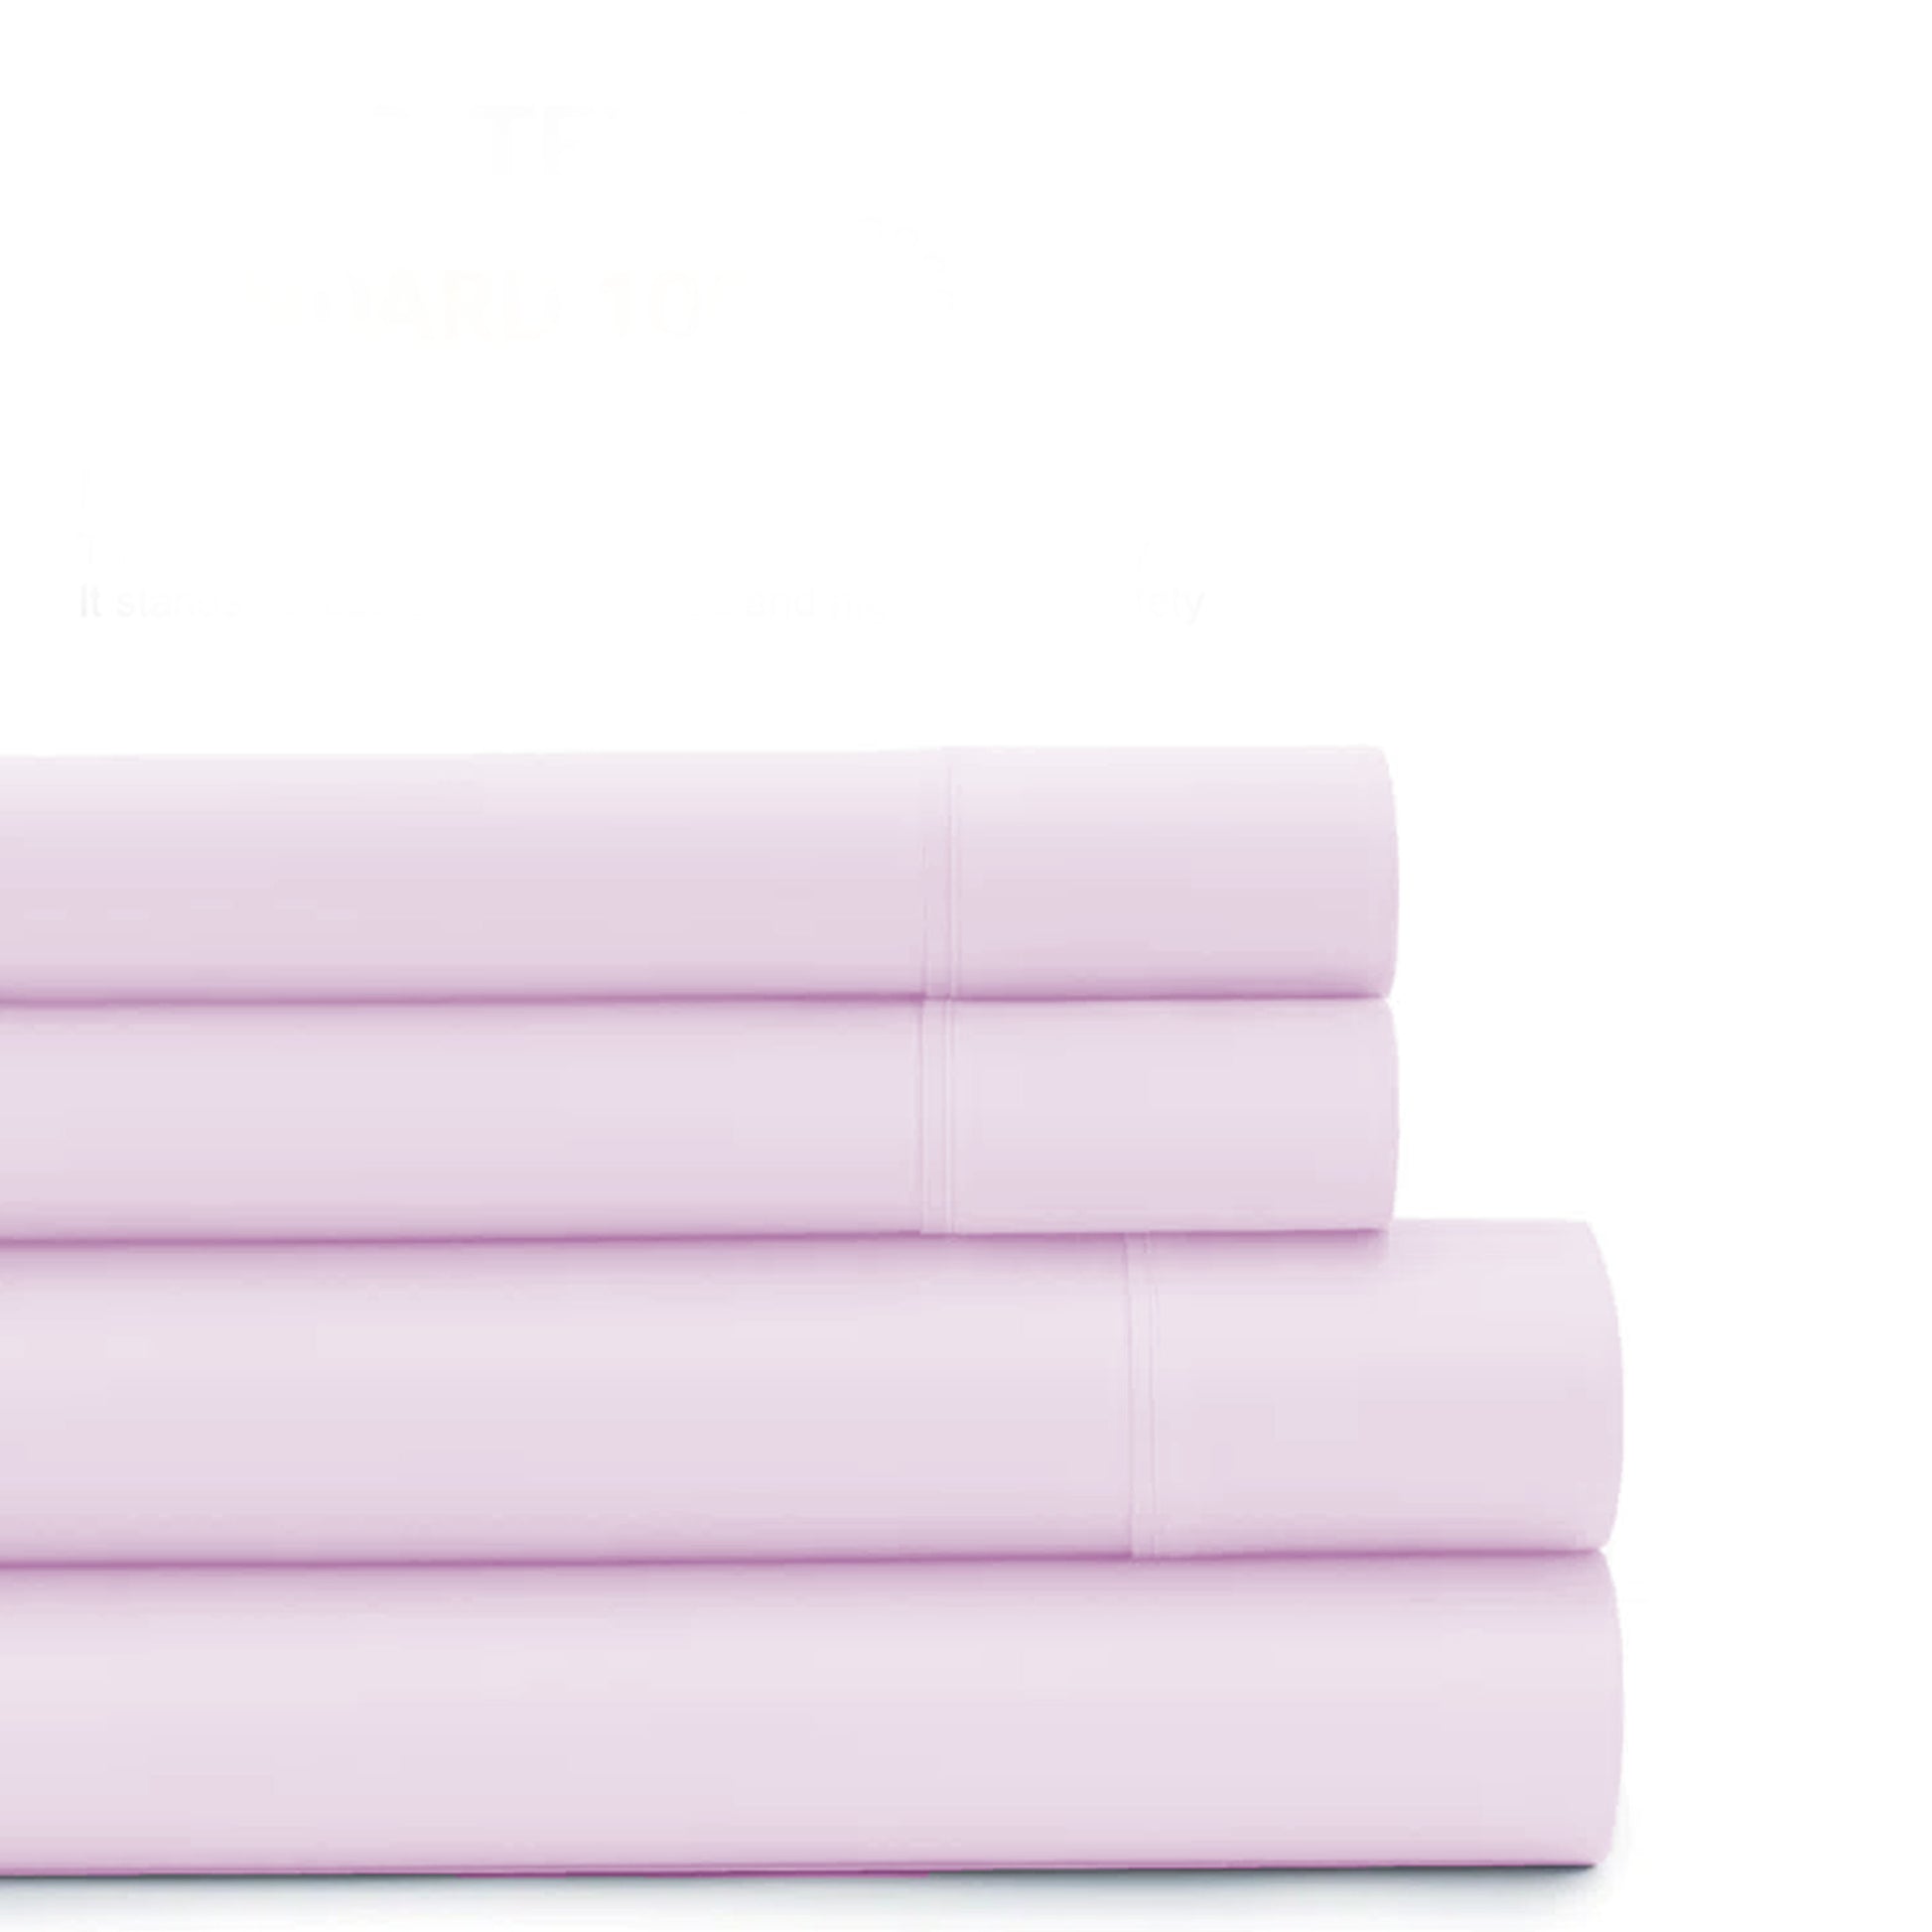 3 Piece Flat Sheet Set Super Soft Pink Super King Size 240x260